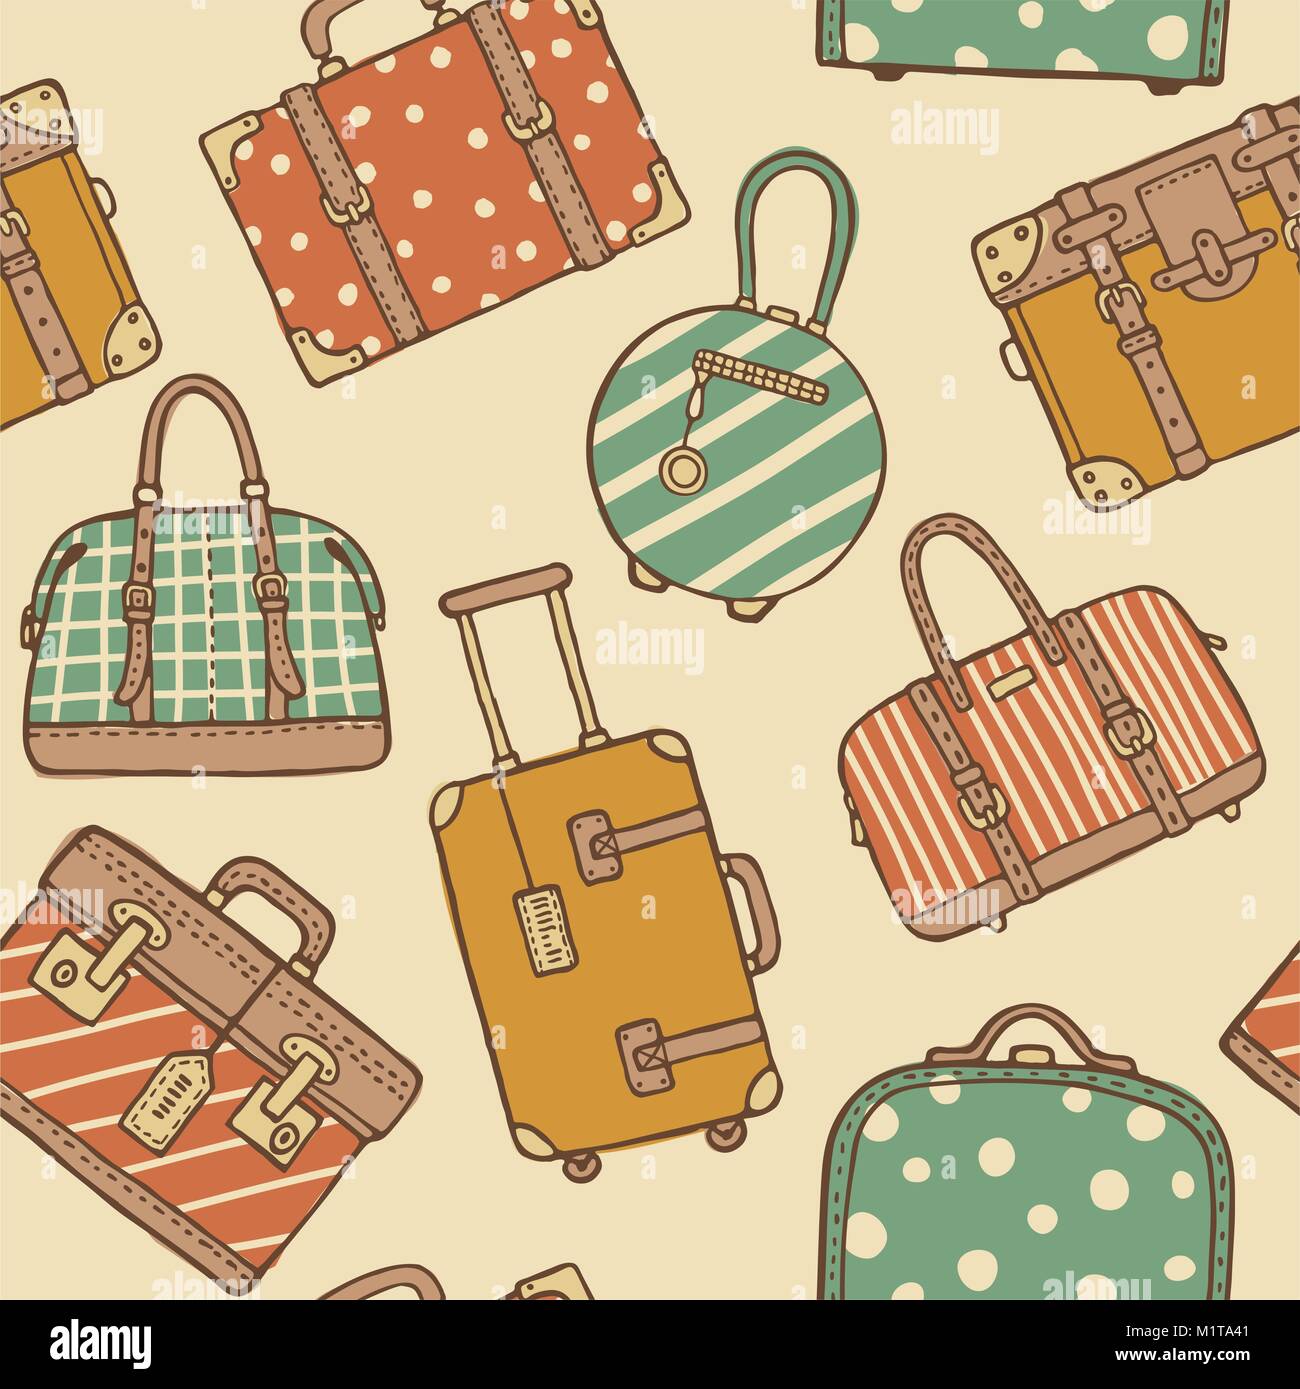 Vektor hand gezeichnete Skizze Stil nahtlose Muster von Vintage Travel Koffer und Taschen für die Verpackung. Retro pastellfarbenen Doodles Stock Vektor